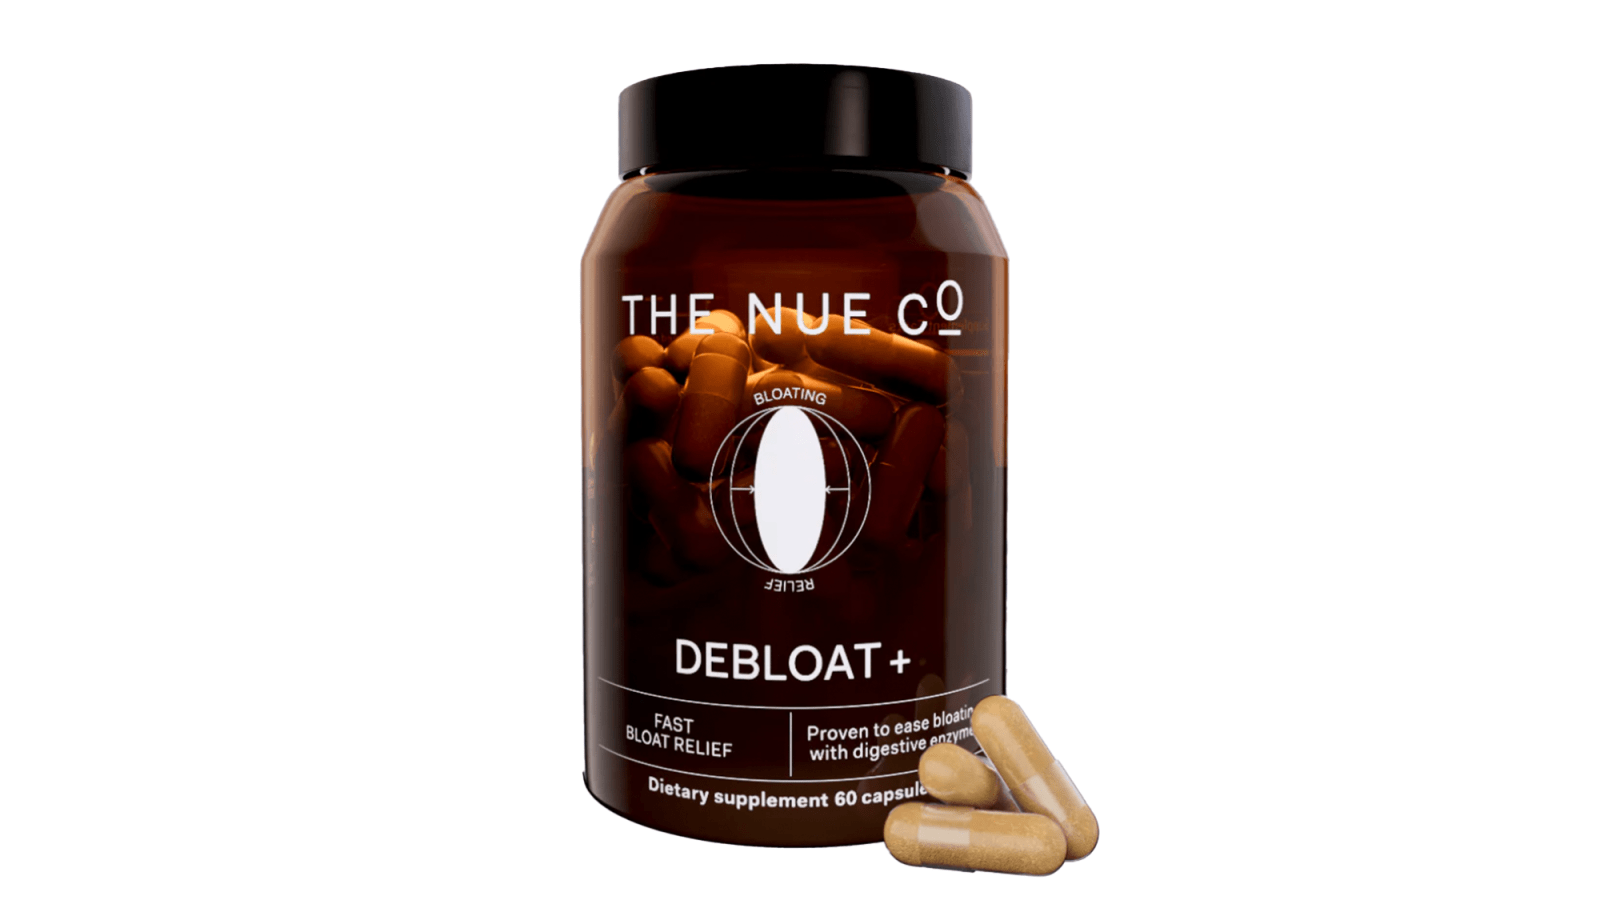 The Nue Co debloat supplements